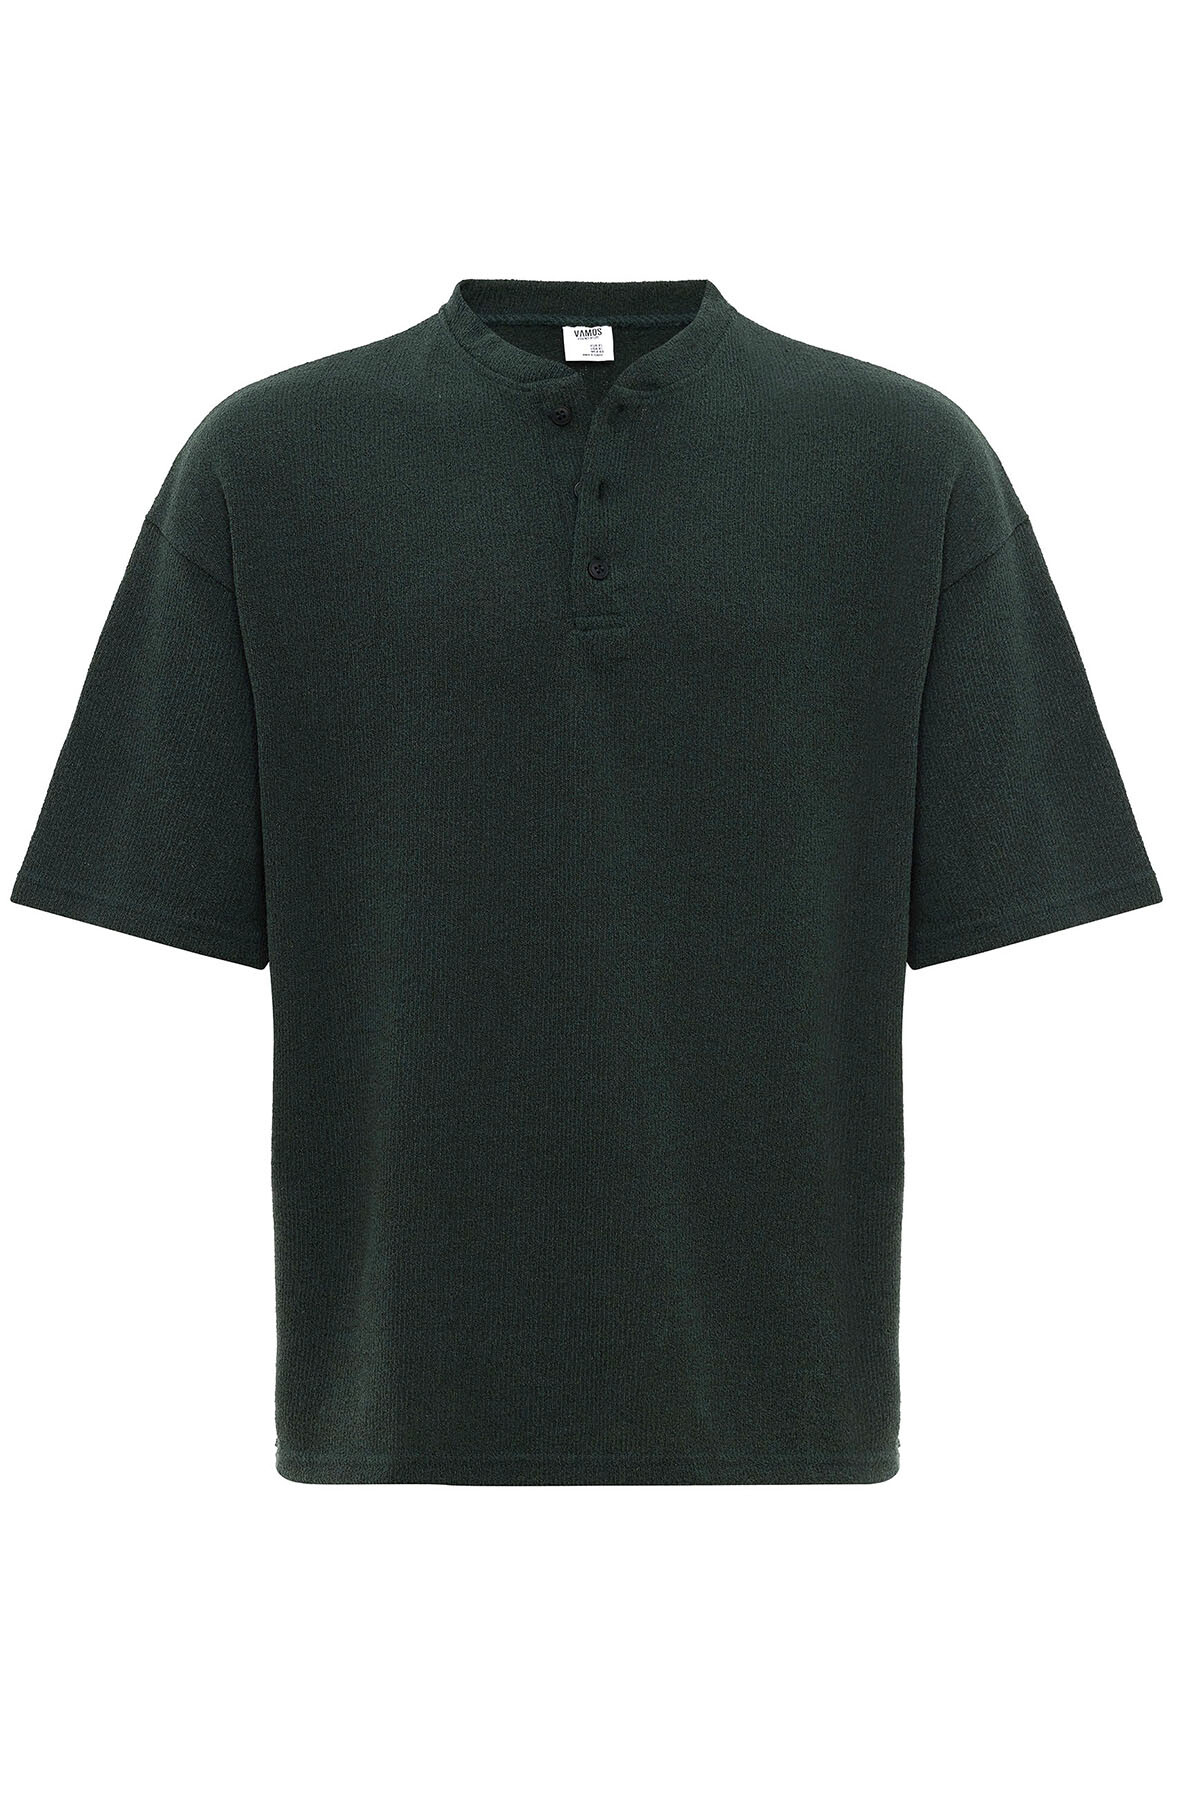 Ön Düğme Detaylı Oversız Triko T-Shirt Nefti